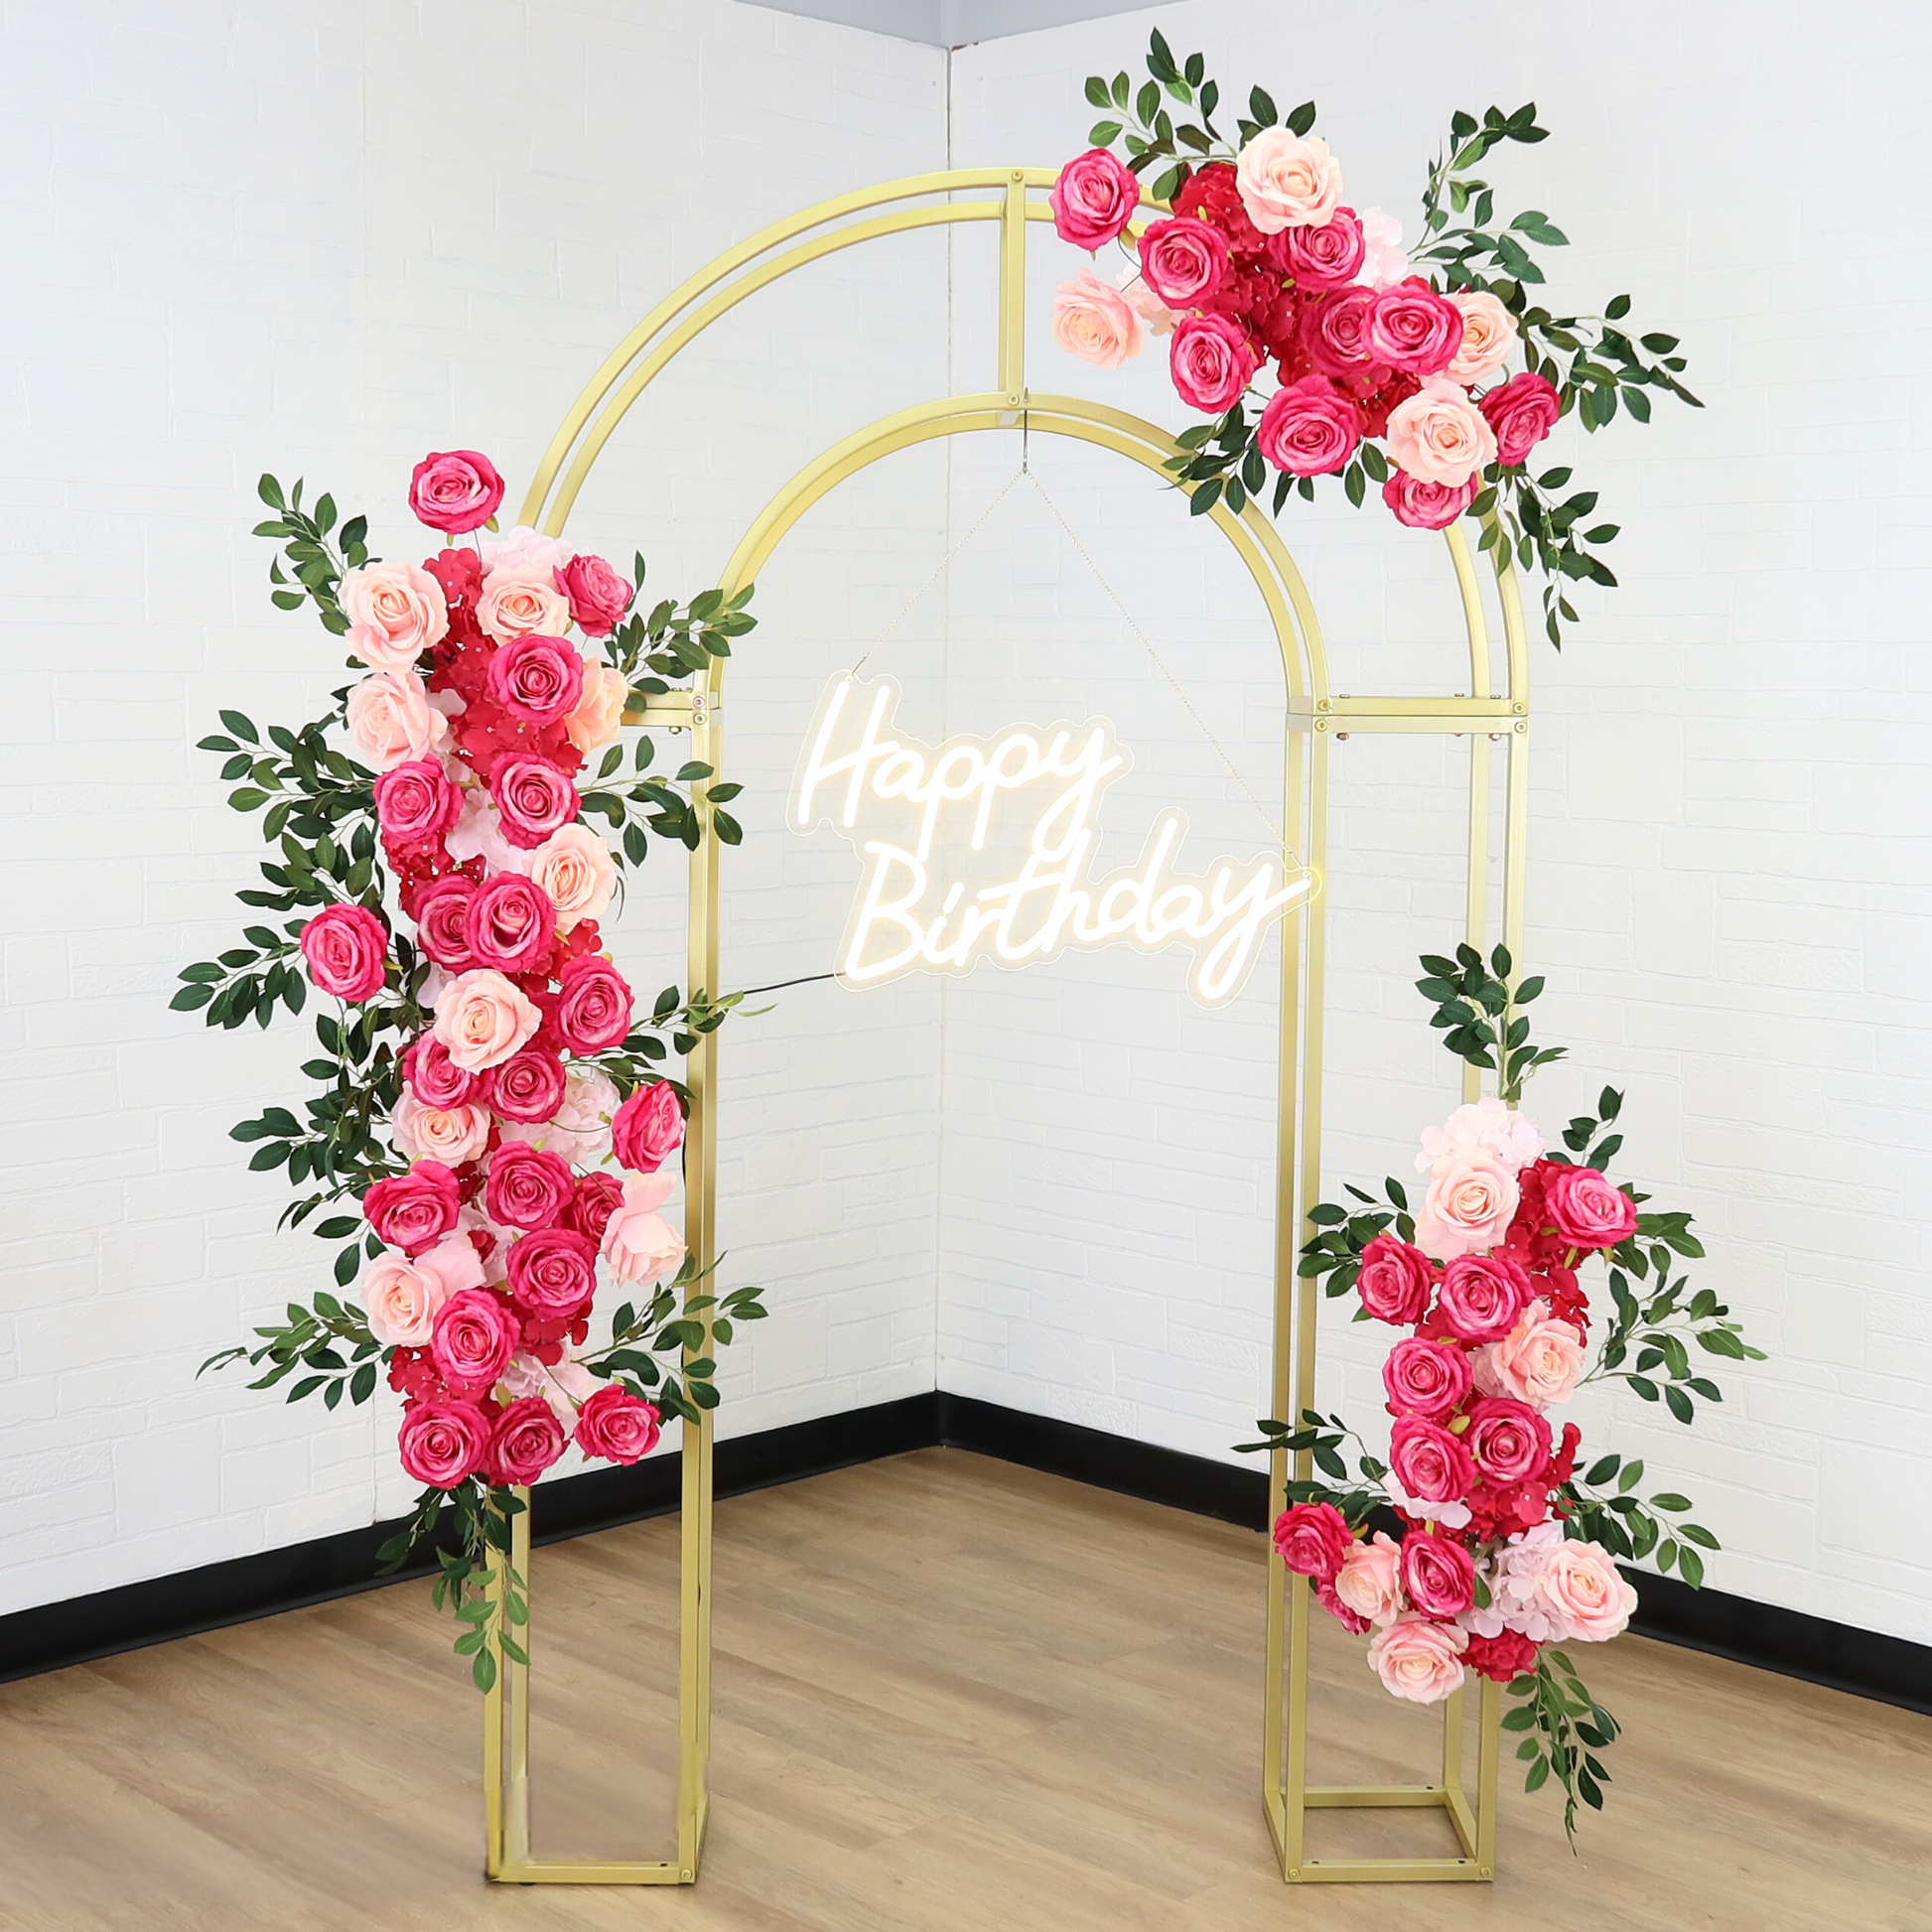 Happy Birthday Neon Sign 62 cm x 31 cm